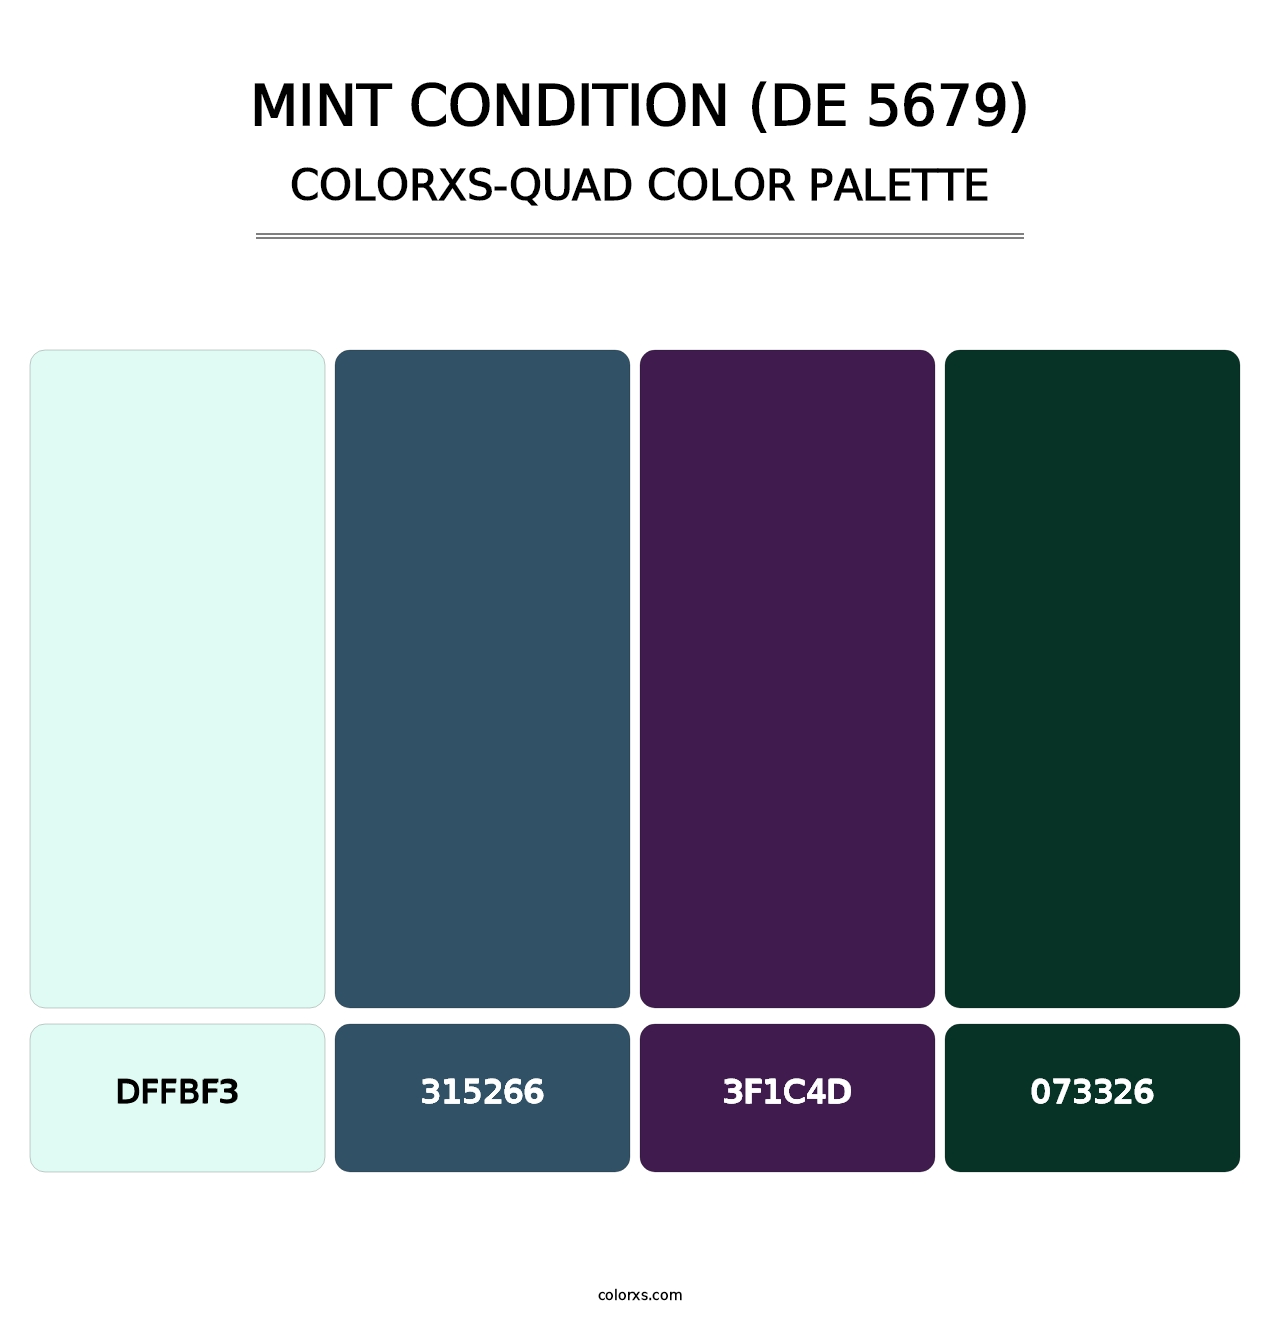 Mint Condition (DE 5679) - Colorxs Quad Palette